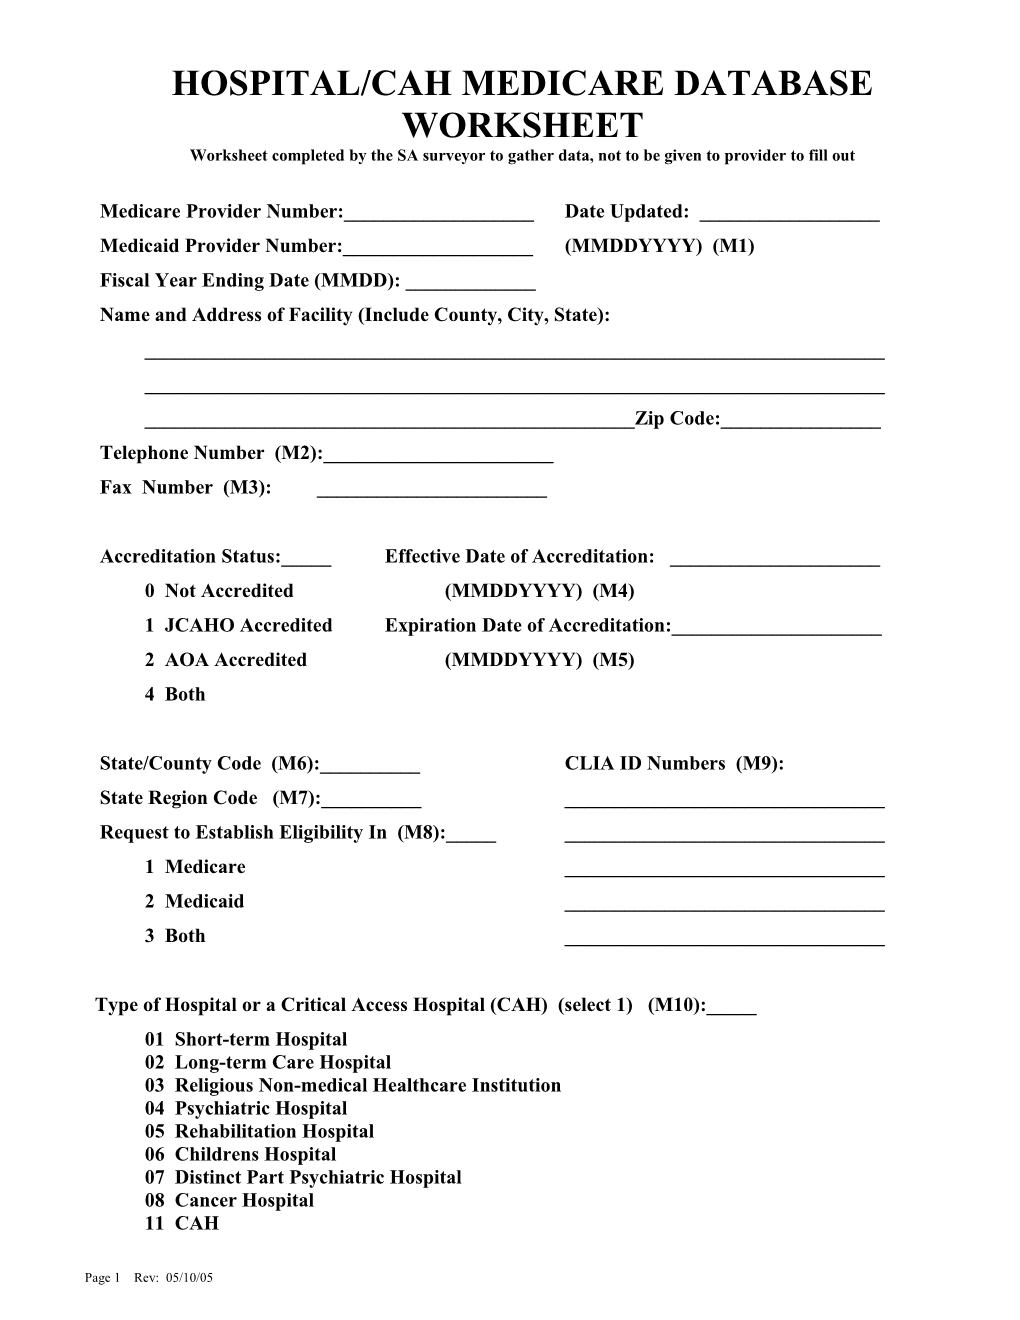 Hospital/Cah Medicare Database Worksheet